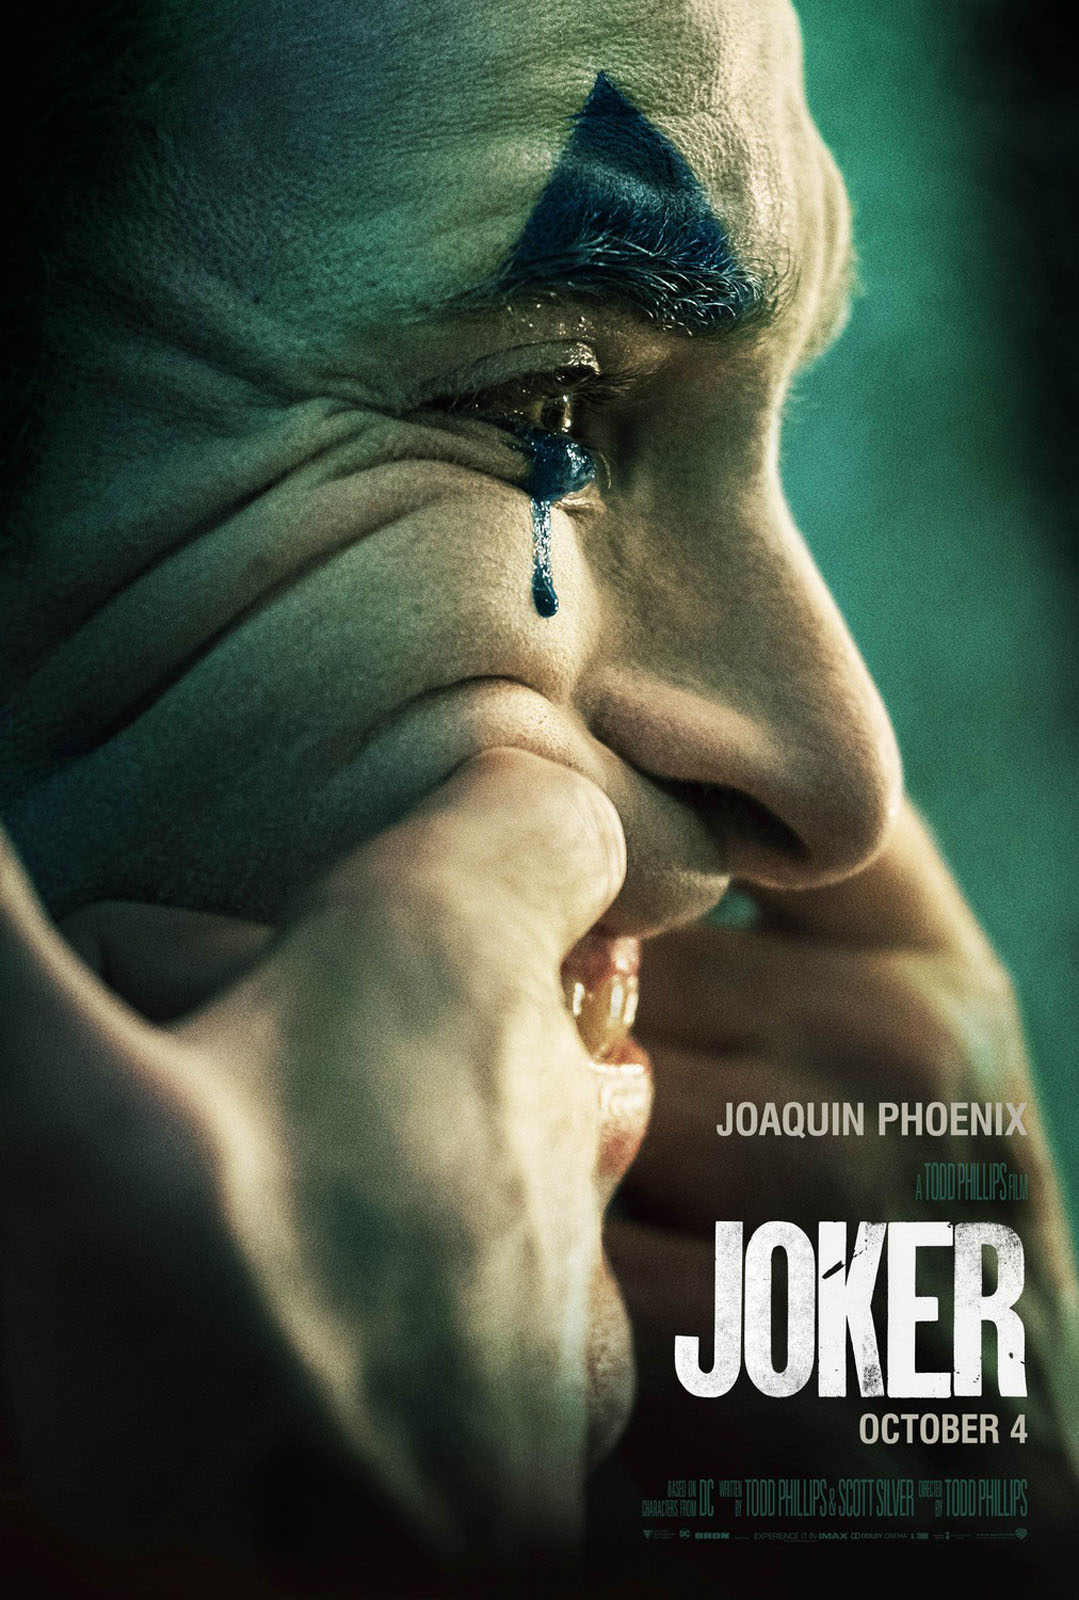 Résultat de recherche d'images pour "joker film affiche"